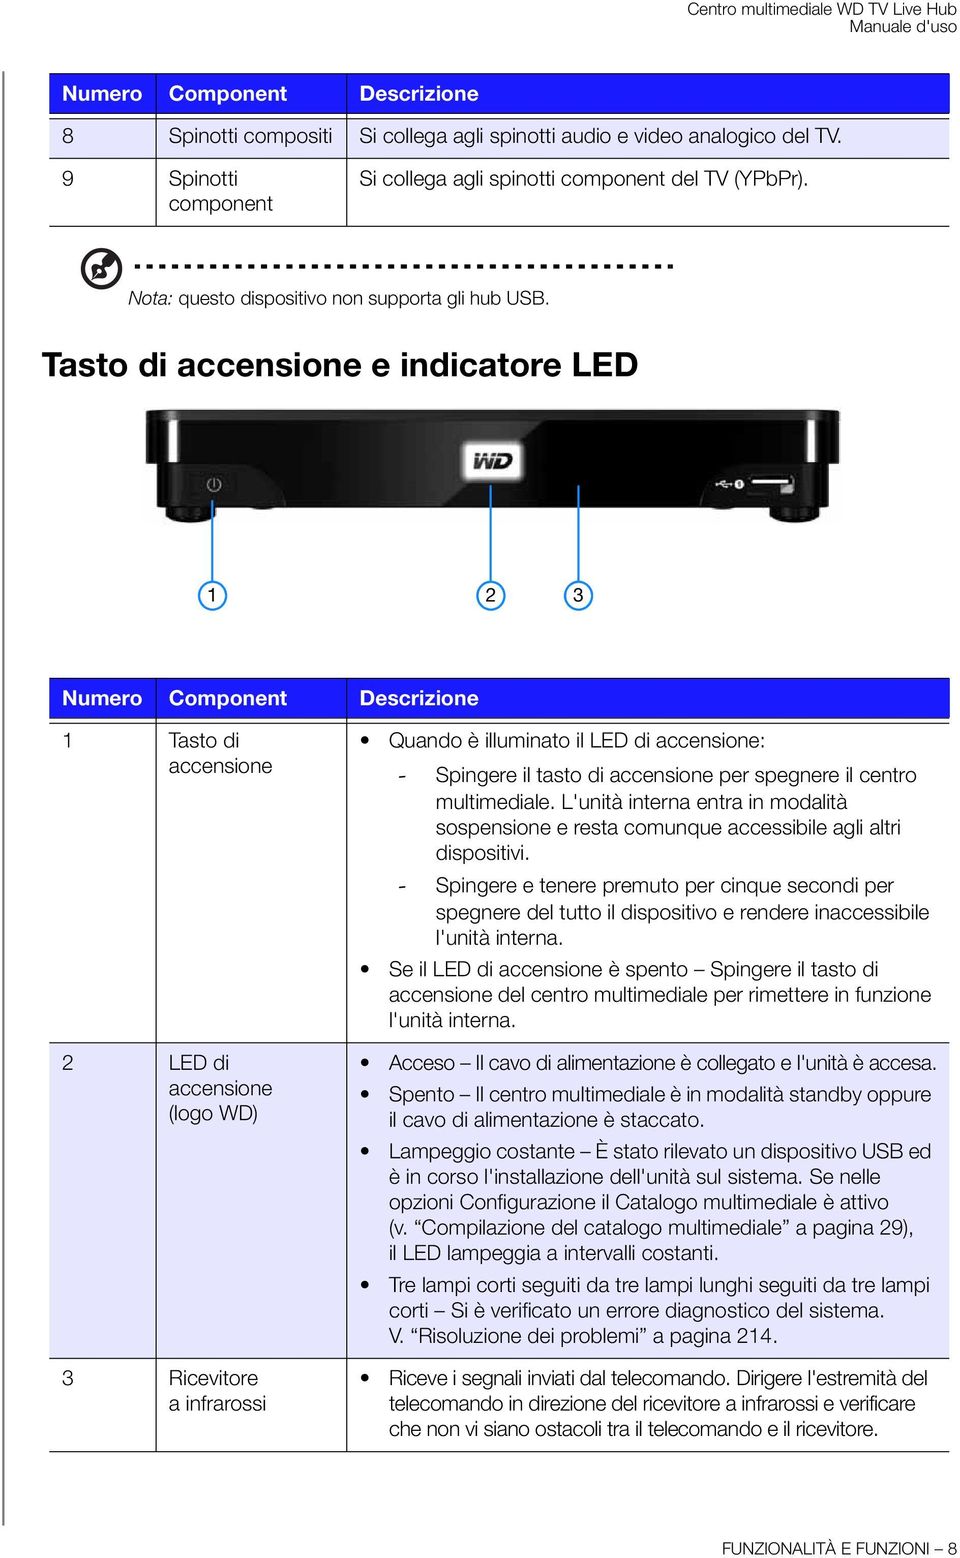 Tasto di accensione e indicatore LED 1 2 3 Numero Component Descrizione 1 Tasto di accensione 2 LED di accensione (logo WD) 3 Ricevitore a infrarossi Quando è illuminato il LED di accensione: -